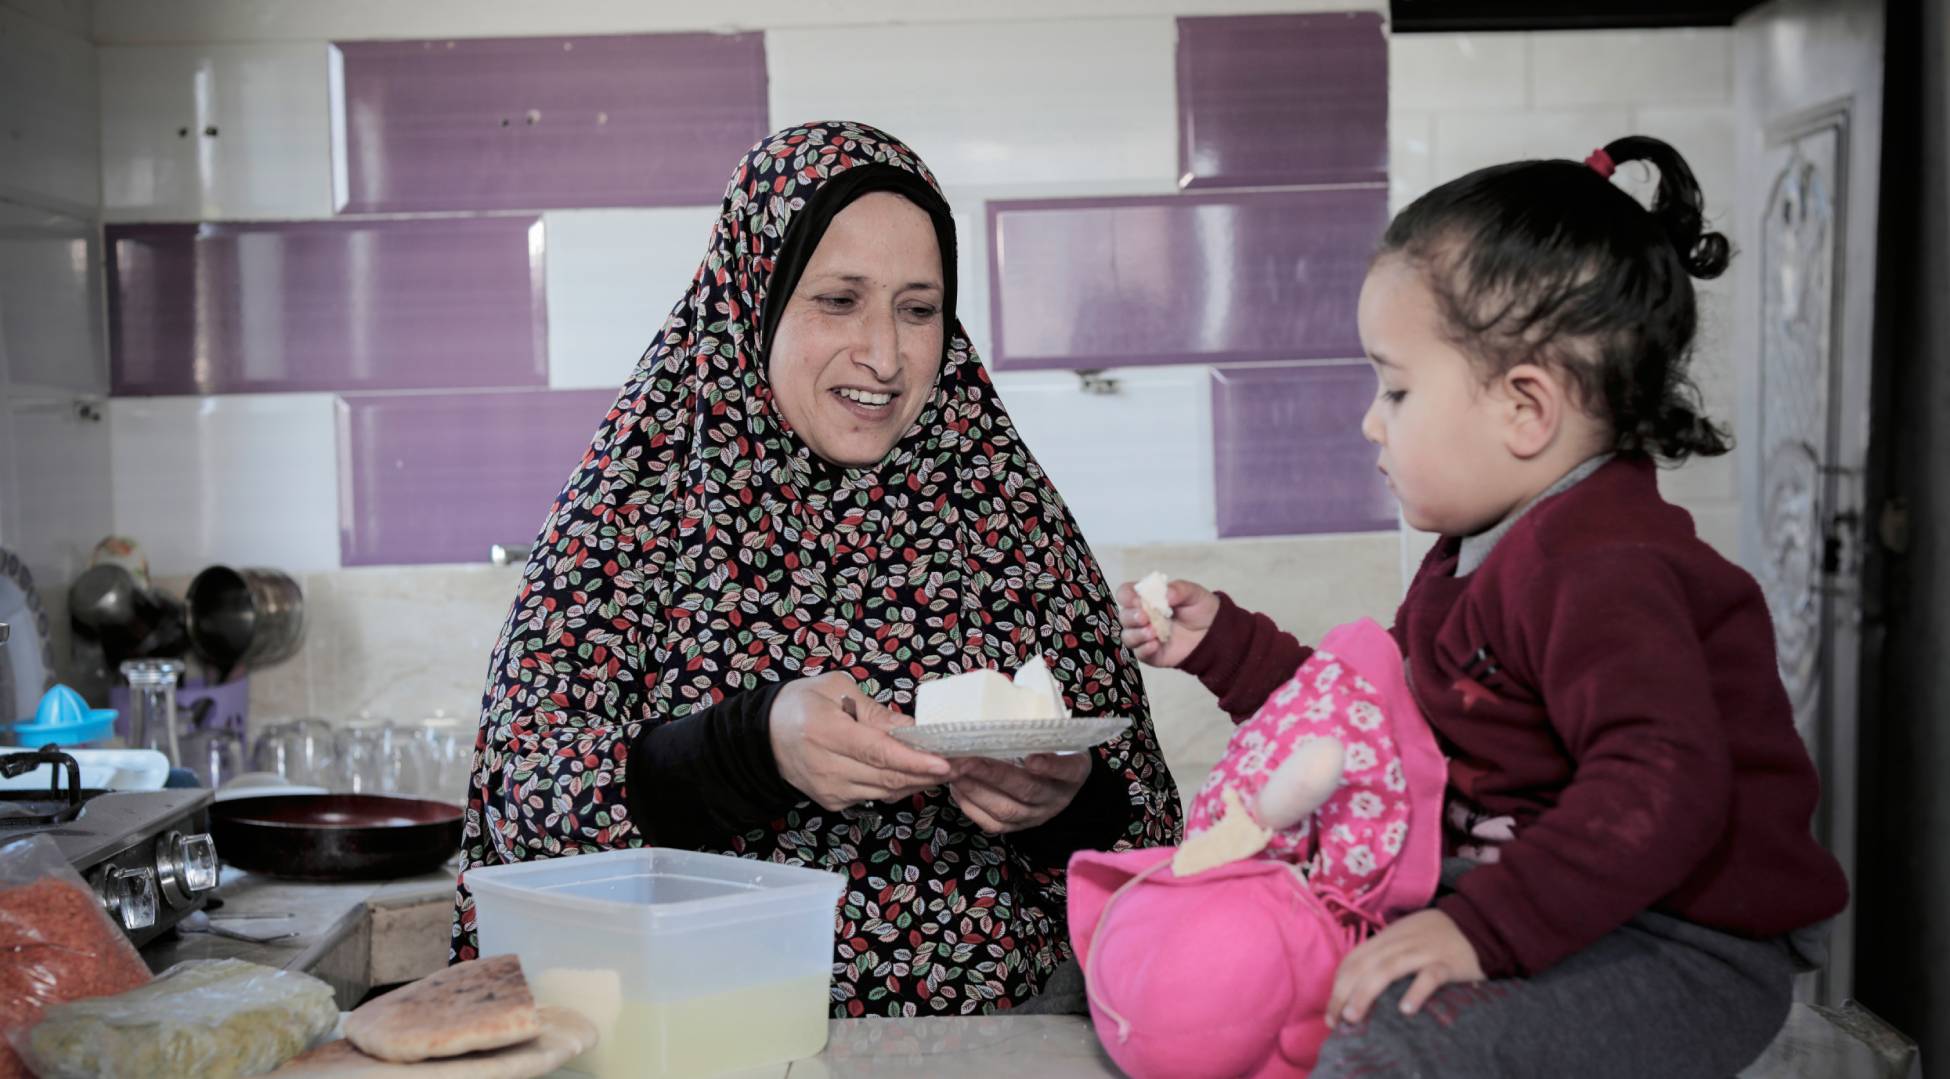 “Esperamos las distribuciones de UNRWA para recibir alimentos básicos” 